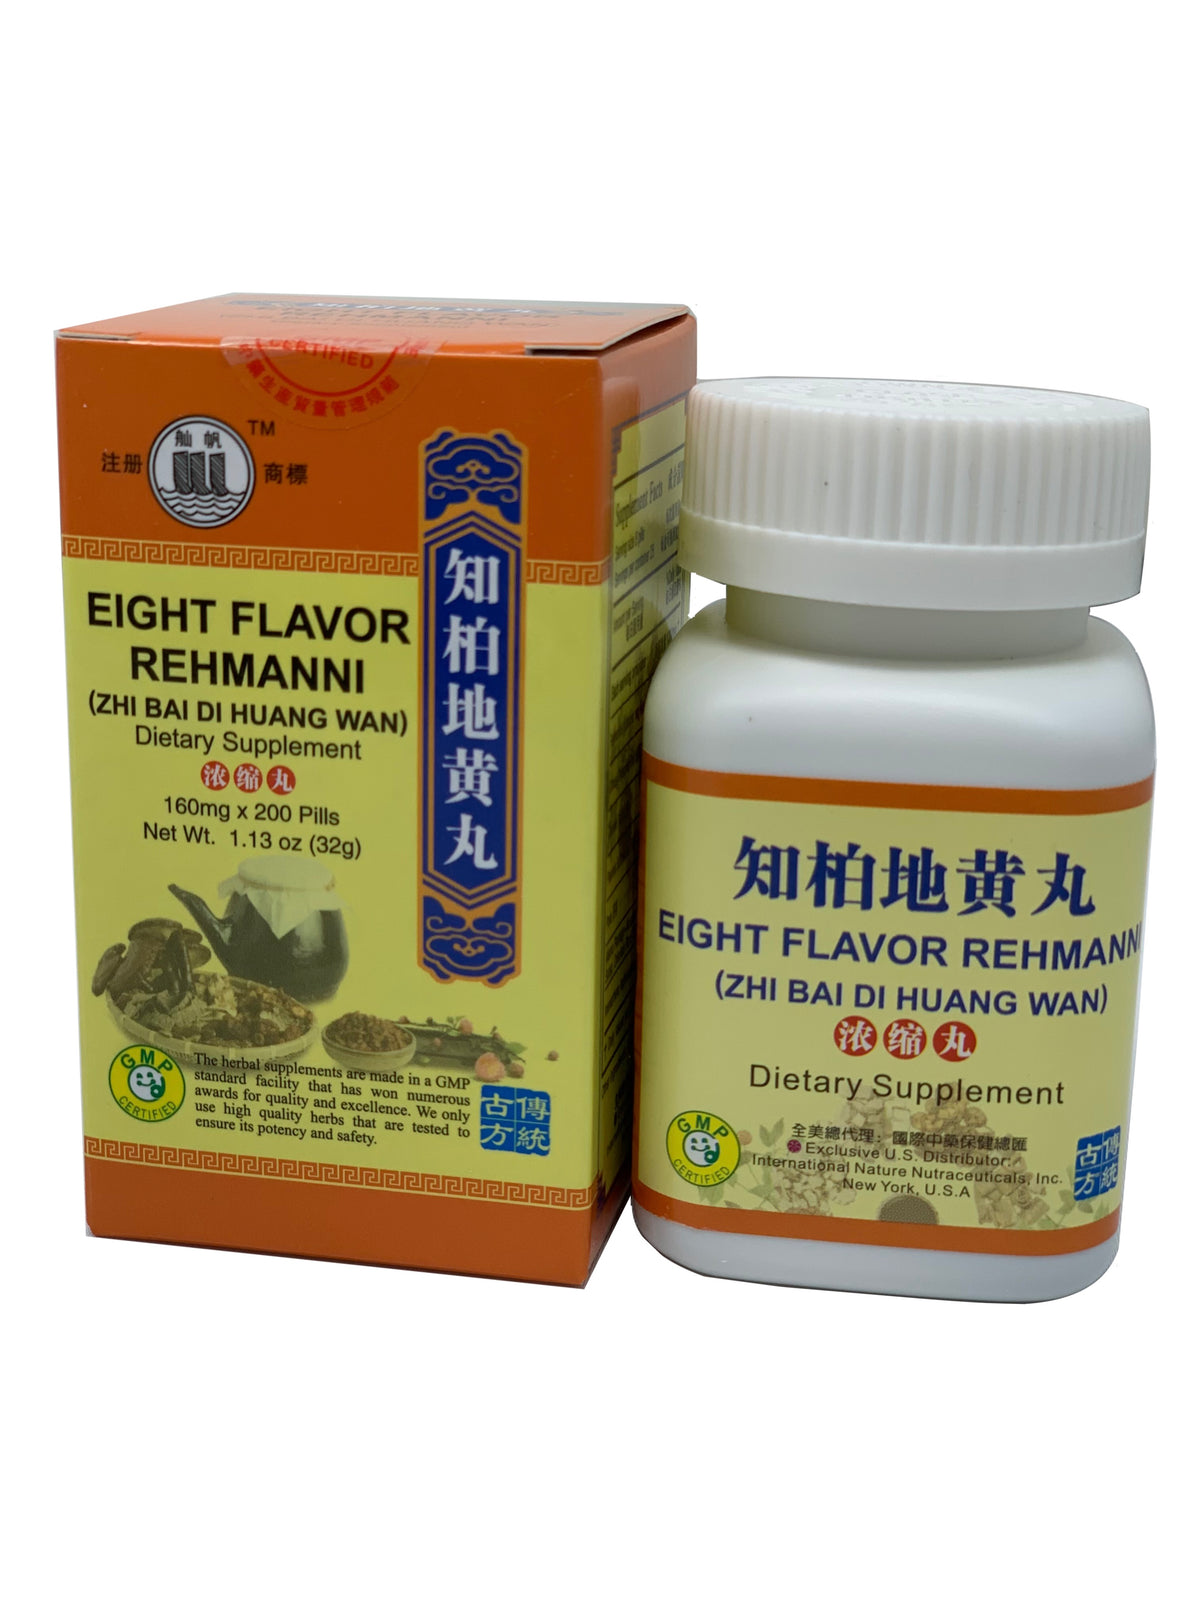 Eight Flavor Rehmanni (Zhi Bai Di Huang Wan)